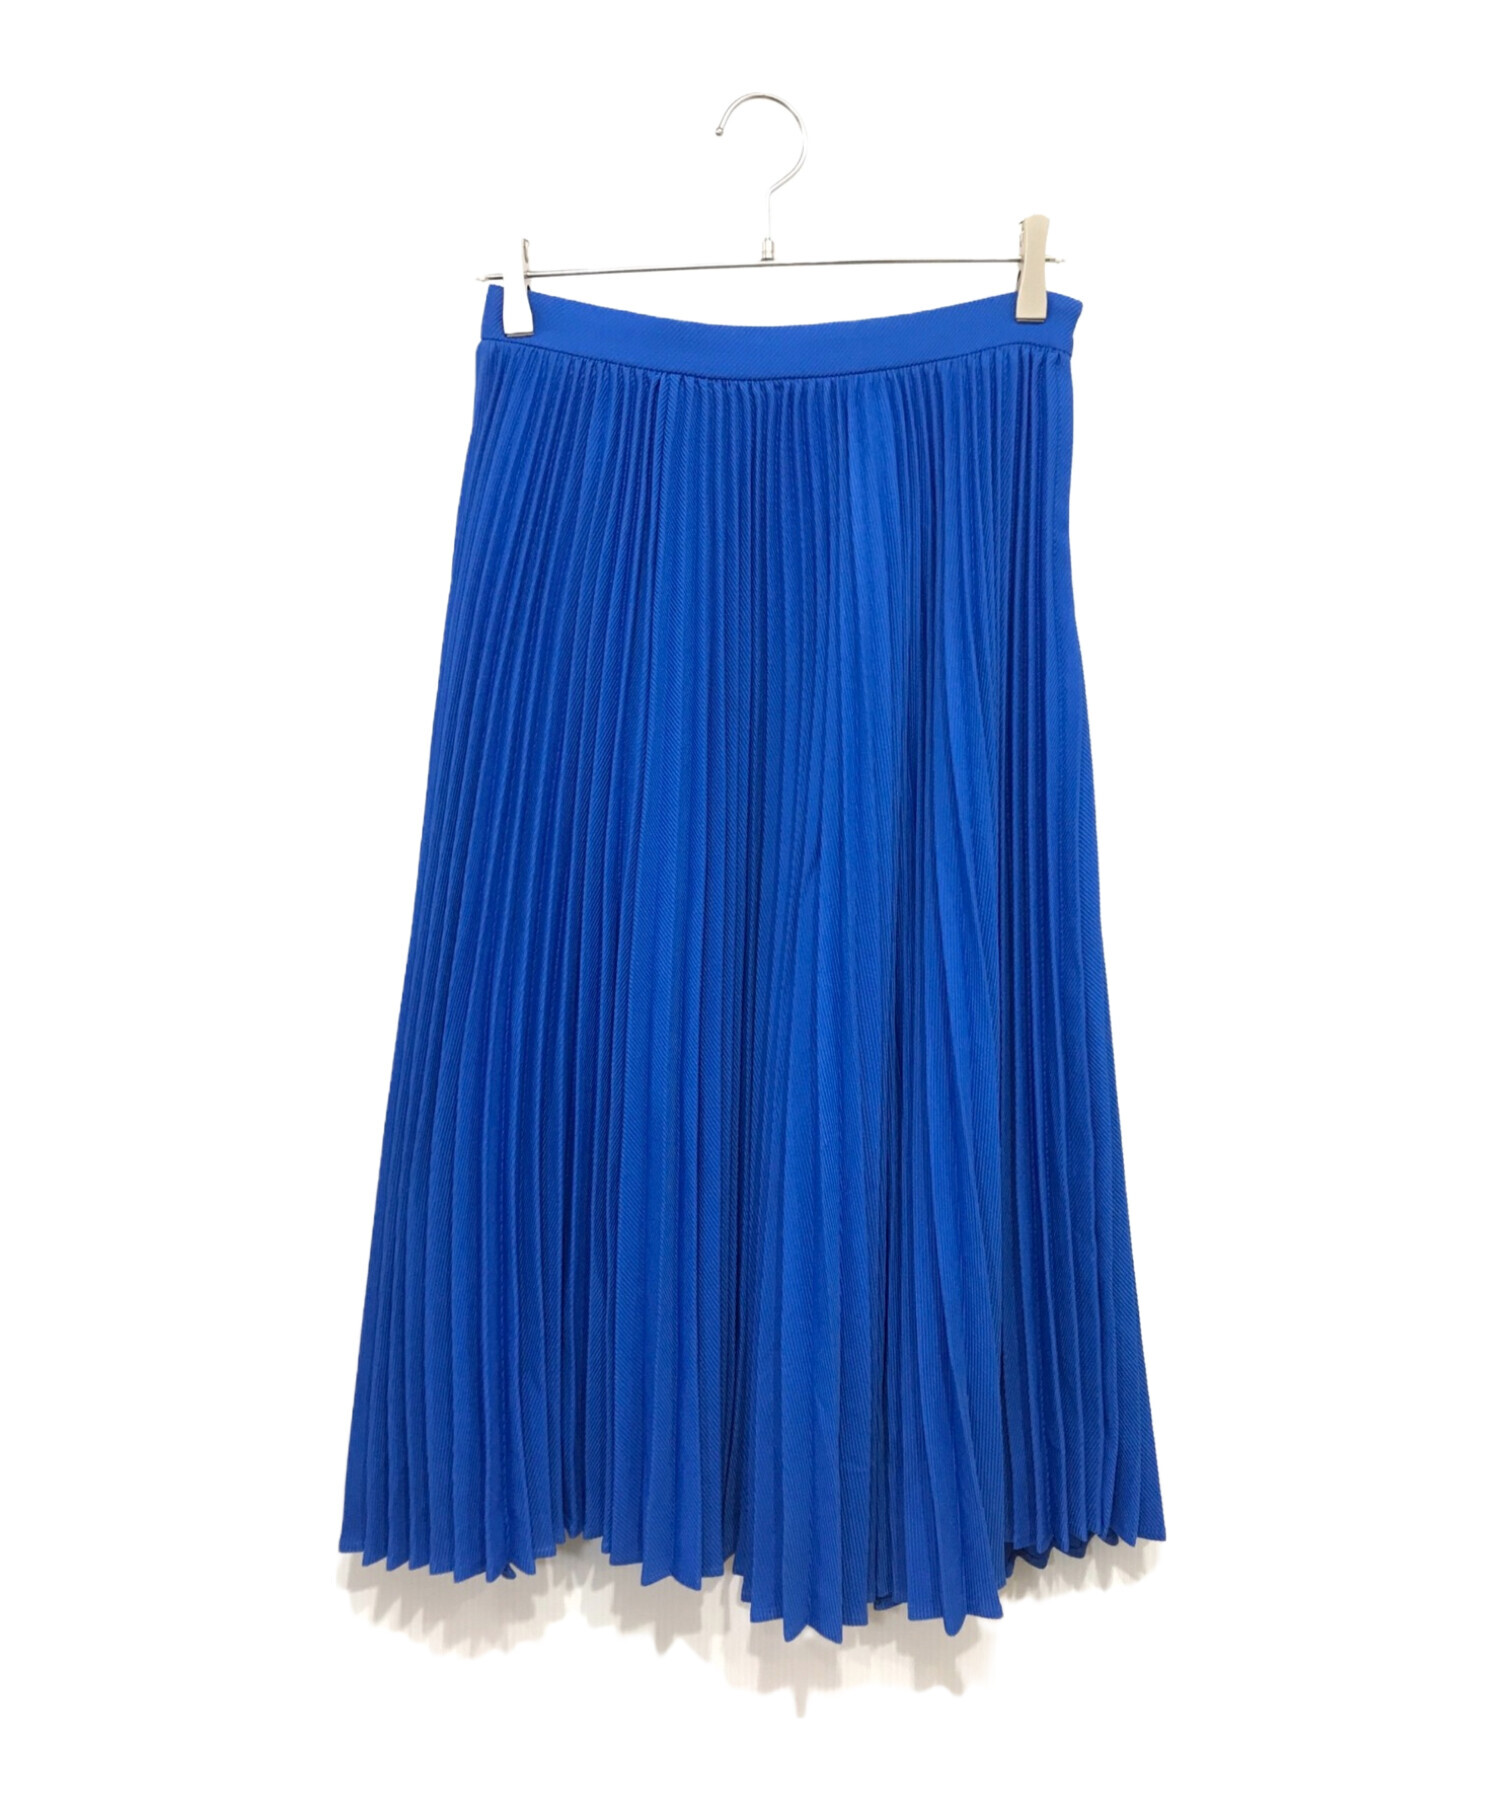 myclozette cen (マイクローゼット セン) プリーツスカート ブルー サイズ:40